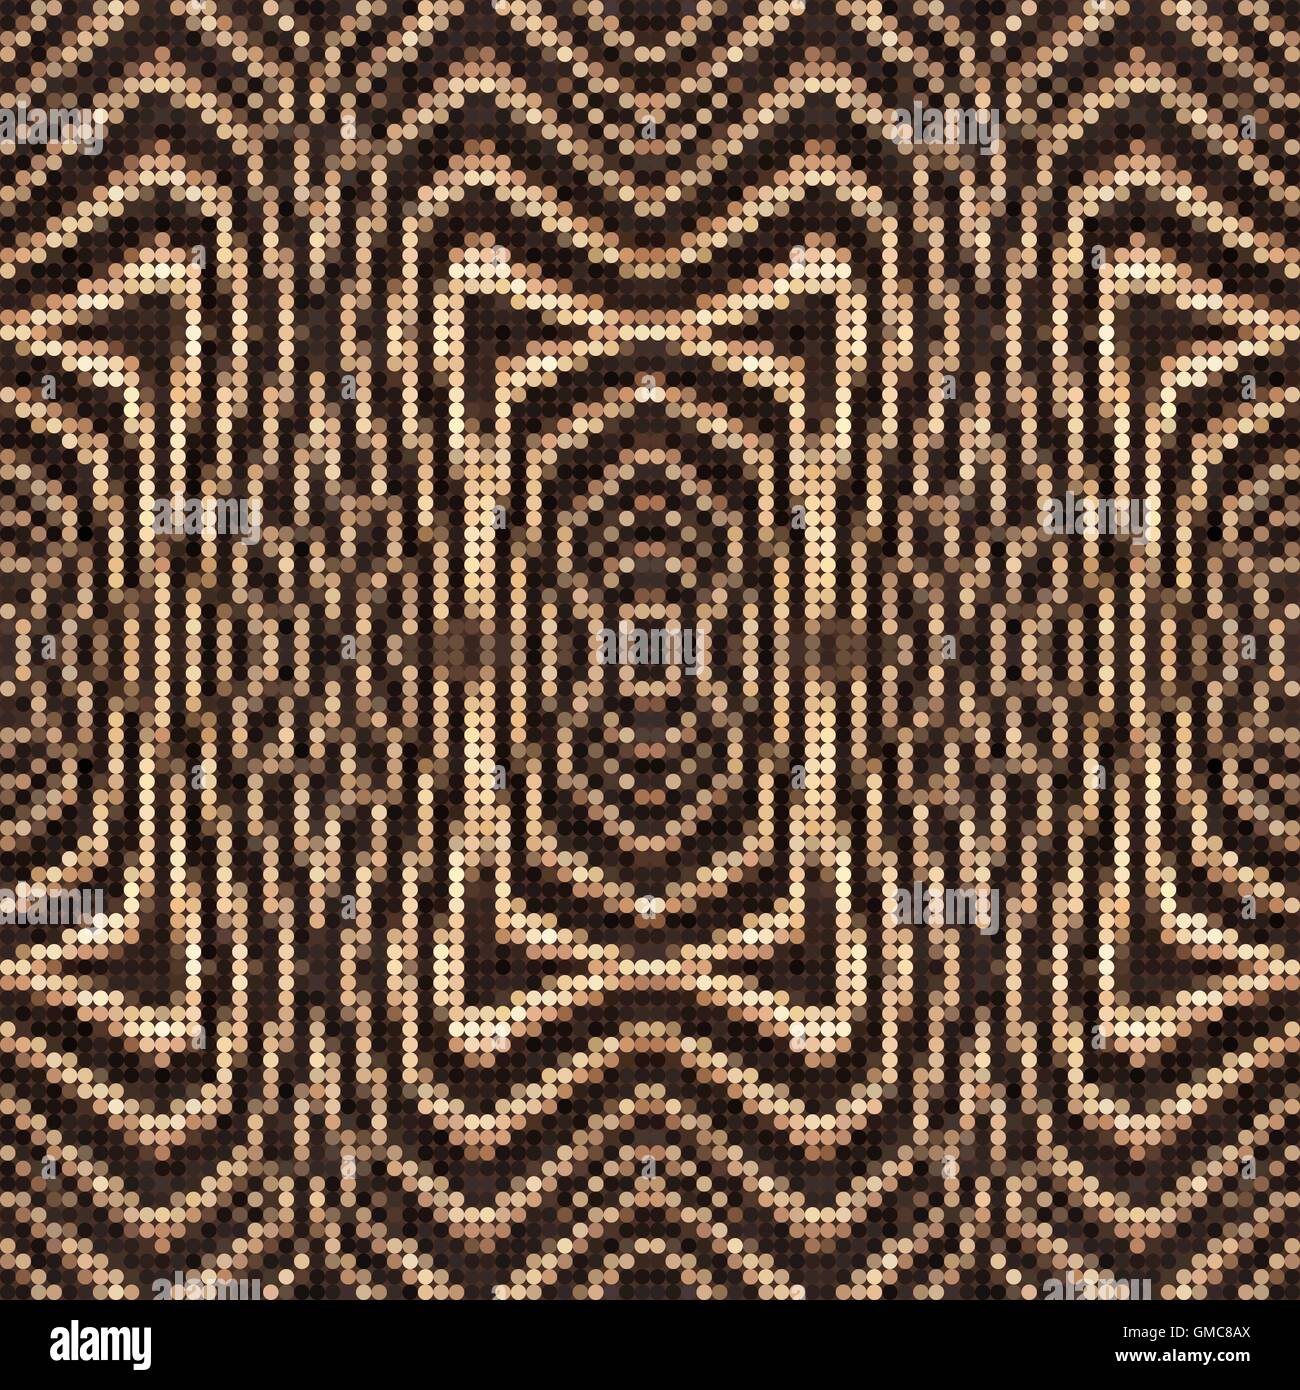 Polka Dot abstracto Animal de fondo o patrón basado en franjas de cebra. Eps Vector 10. Ilustración del Vector